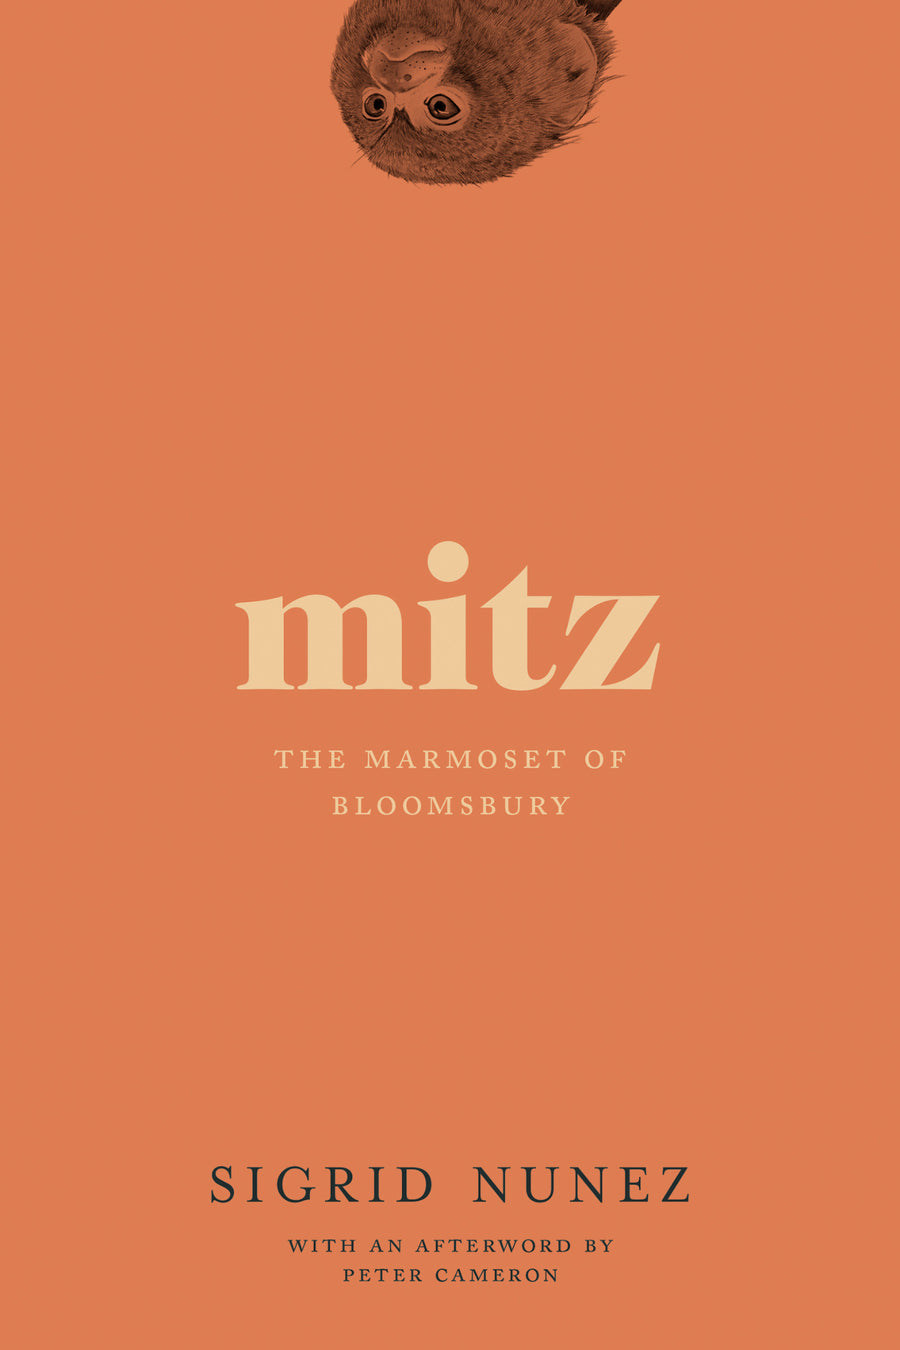 Cover of Mitz